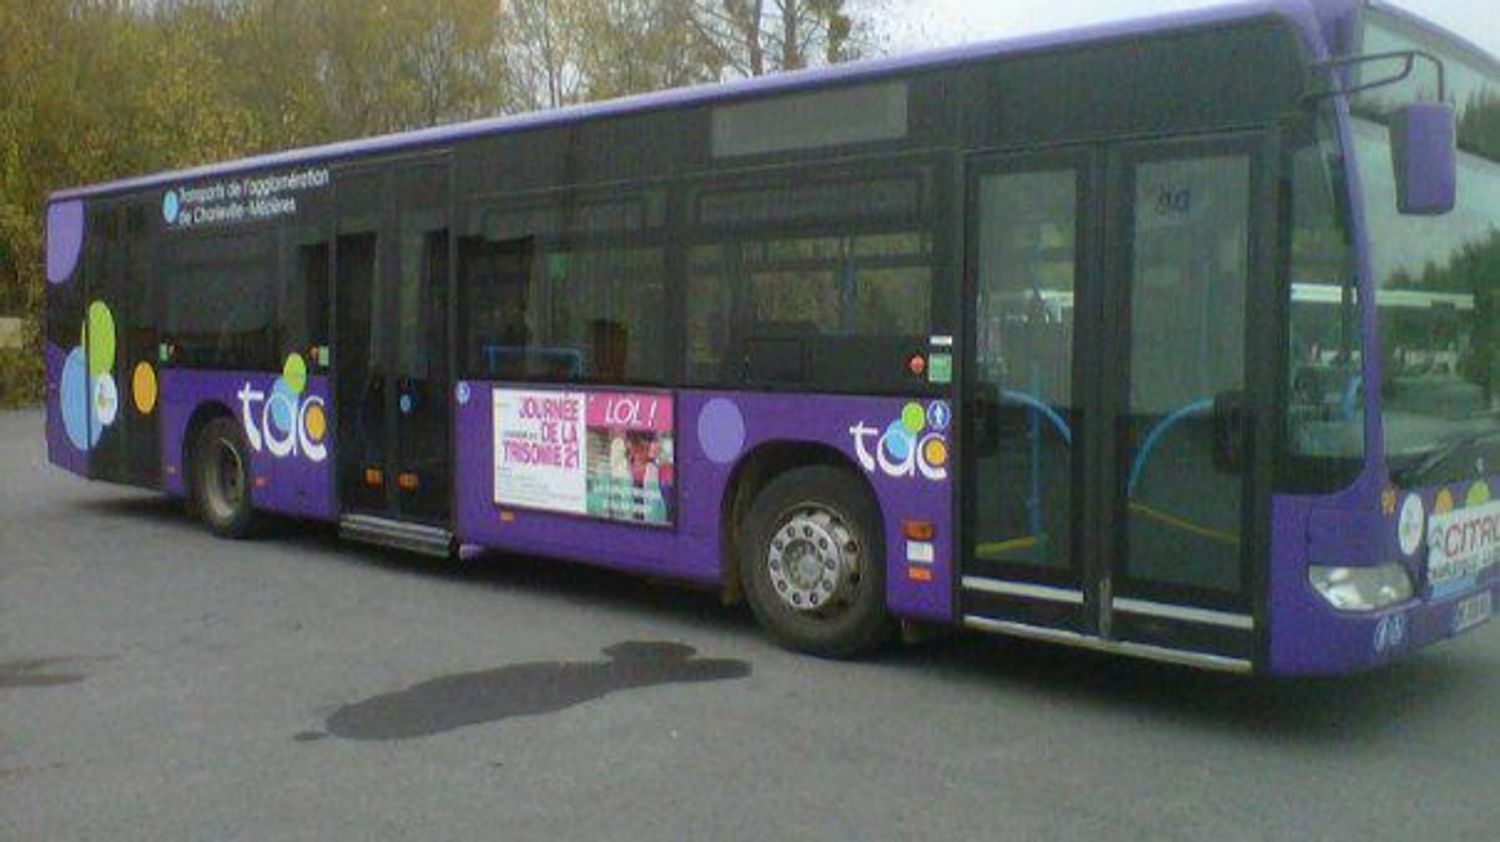 Bus TAC